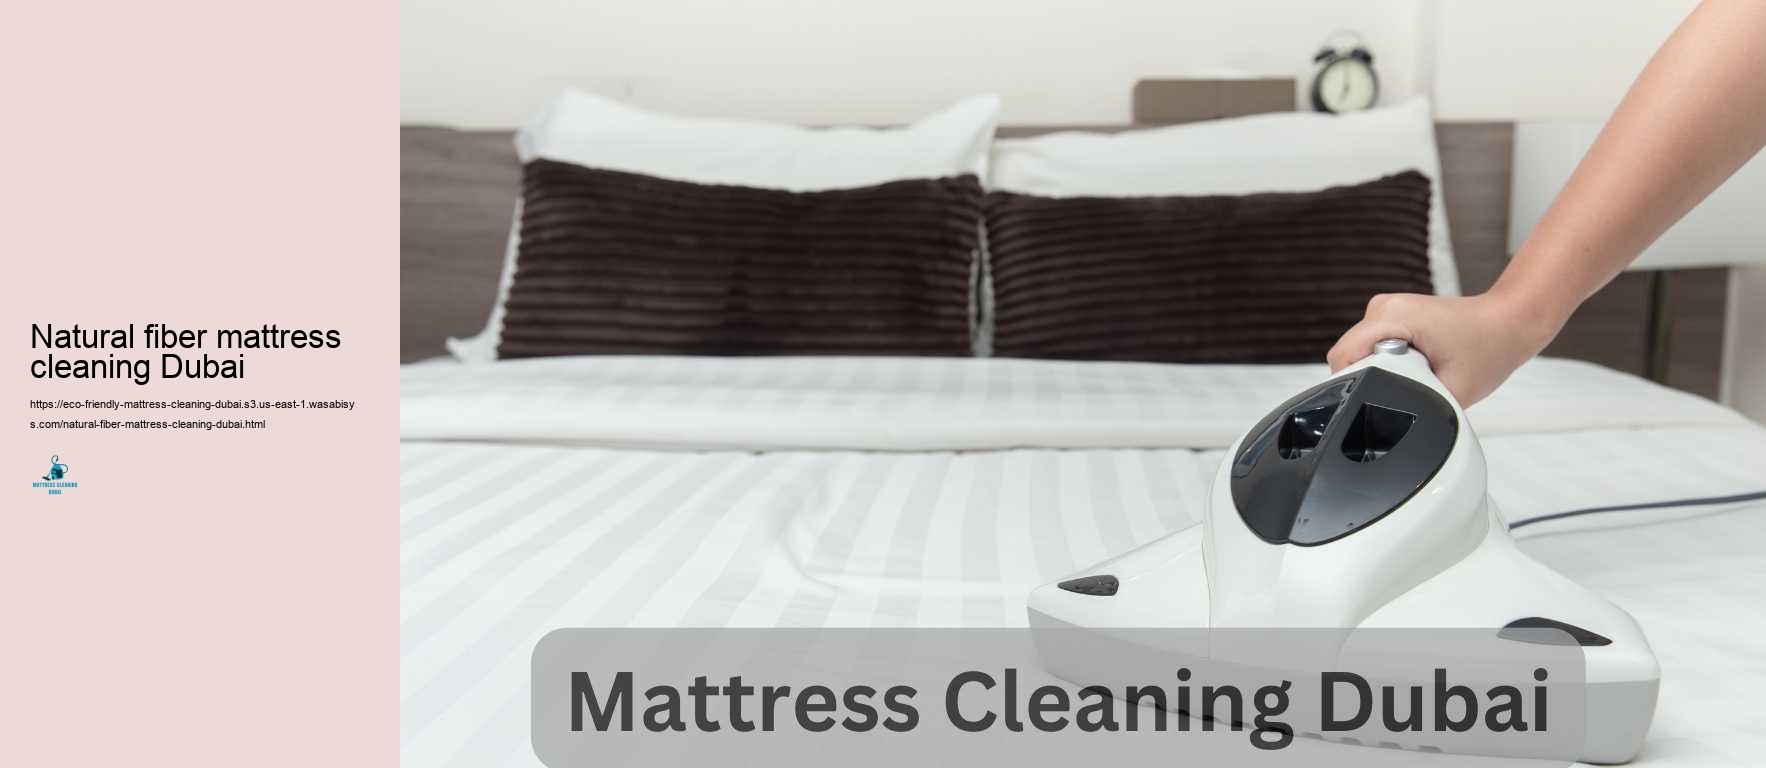 Natural fiber mattress cleaning Dubai